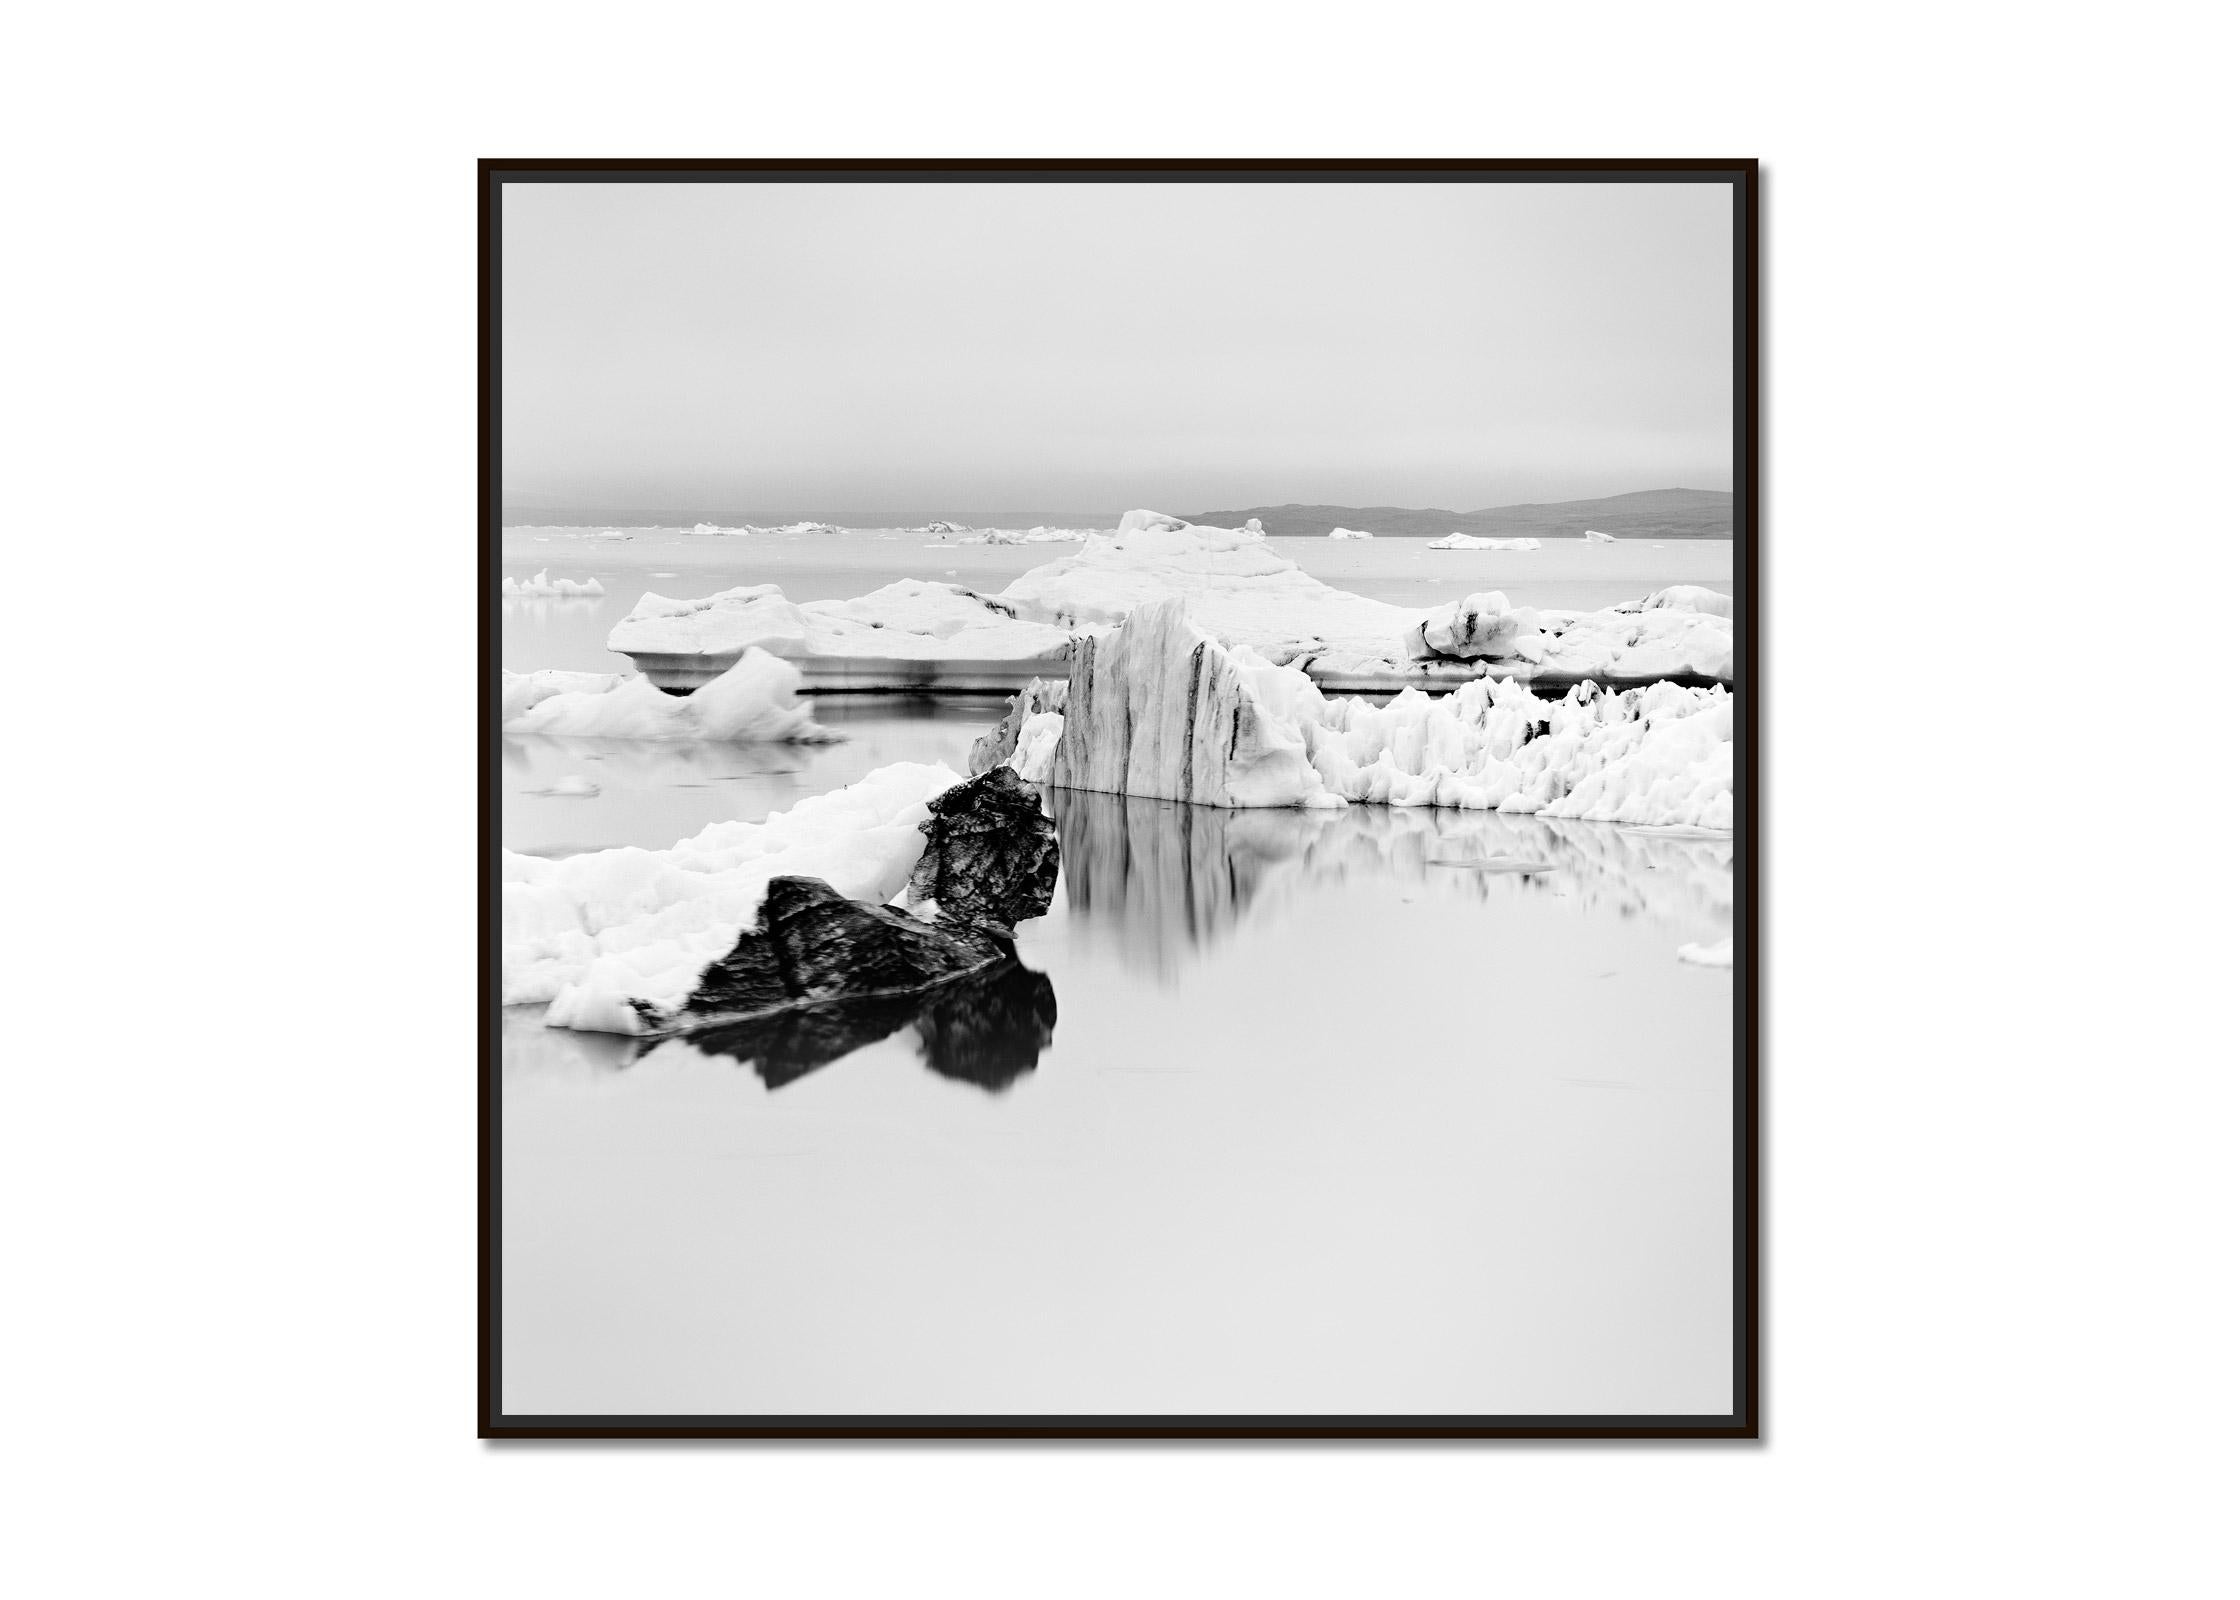 Eisberg, stiller Morgen, Island, Schwarz-Weiß-Fotografie der bildenden Kunst – Photograph von Gerald Berghammer